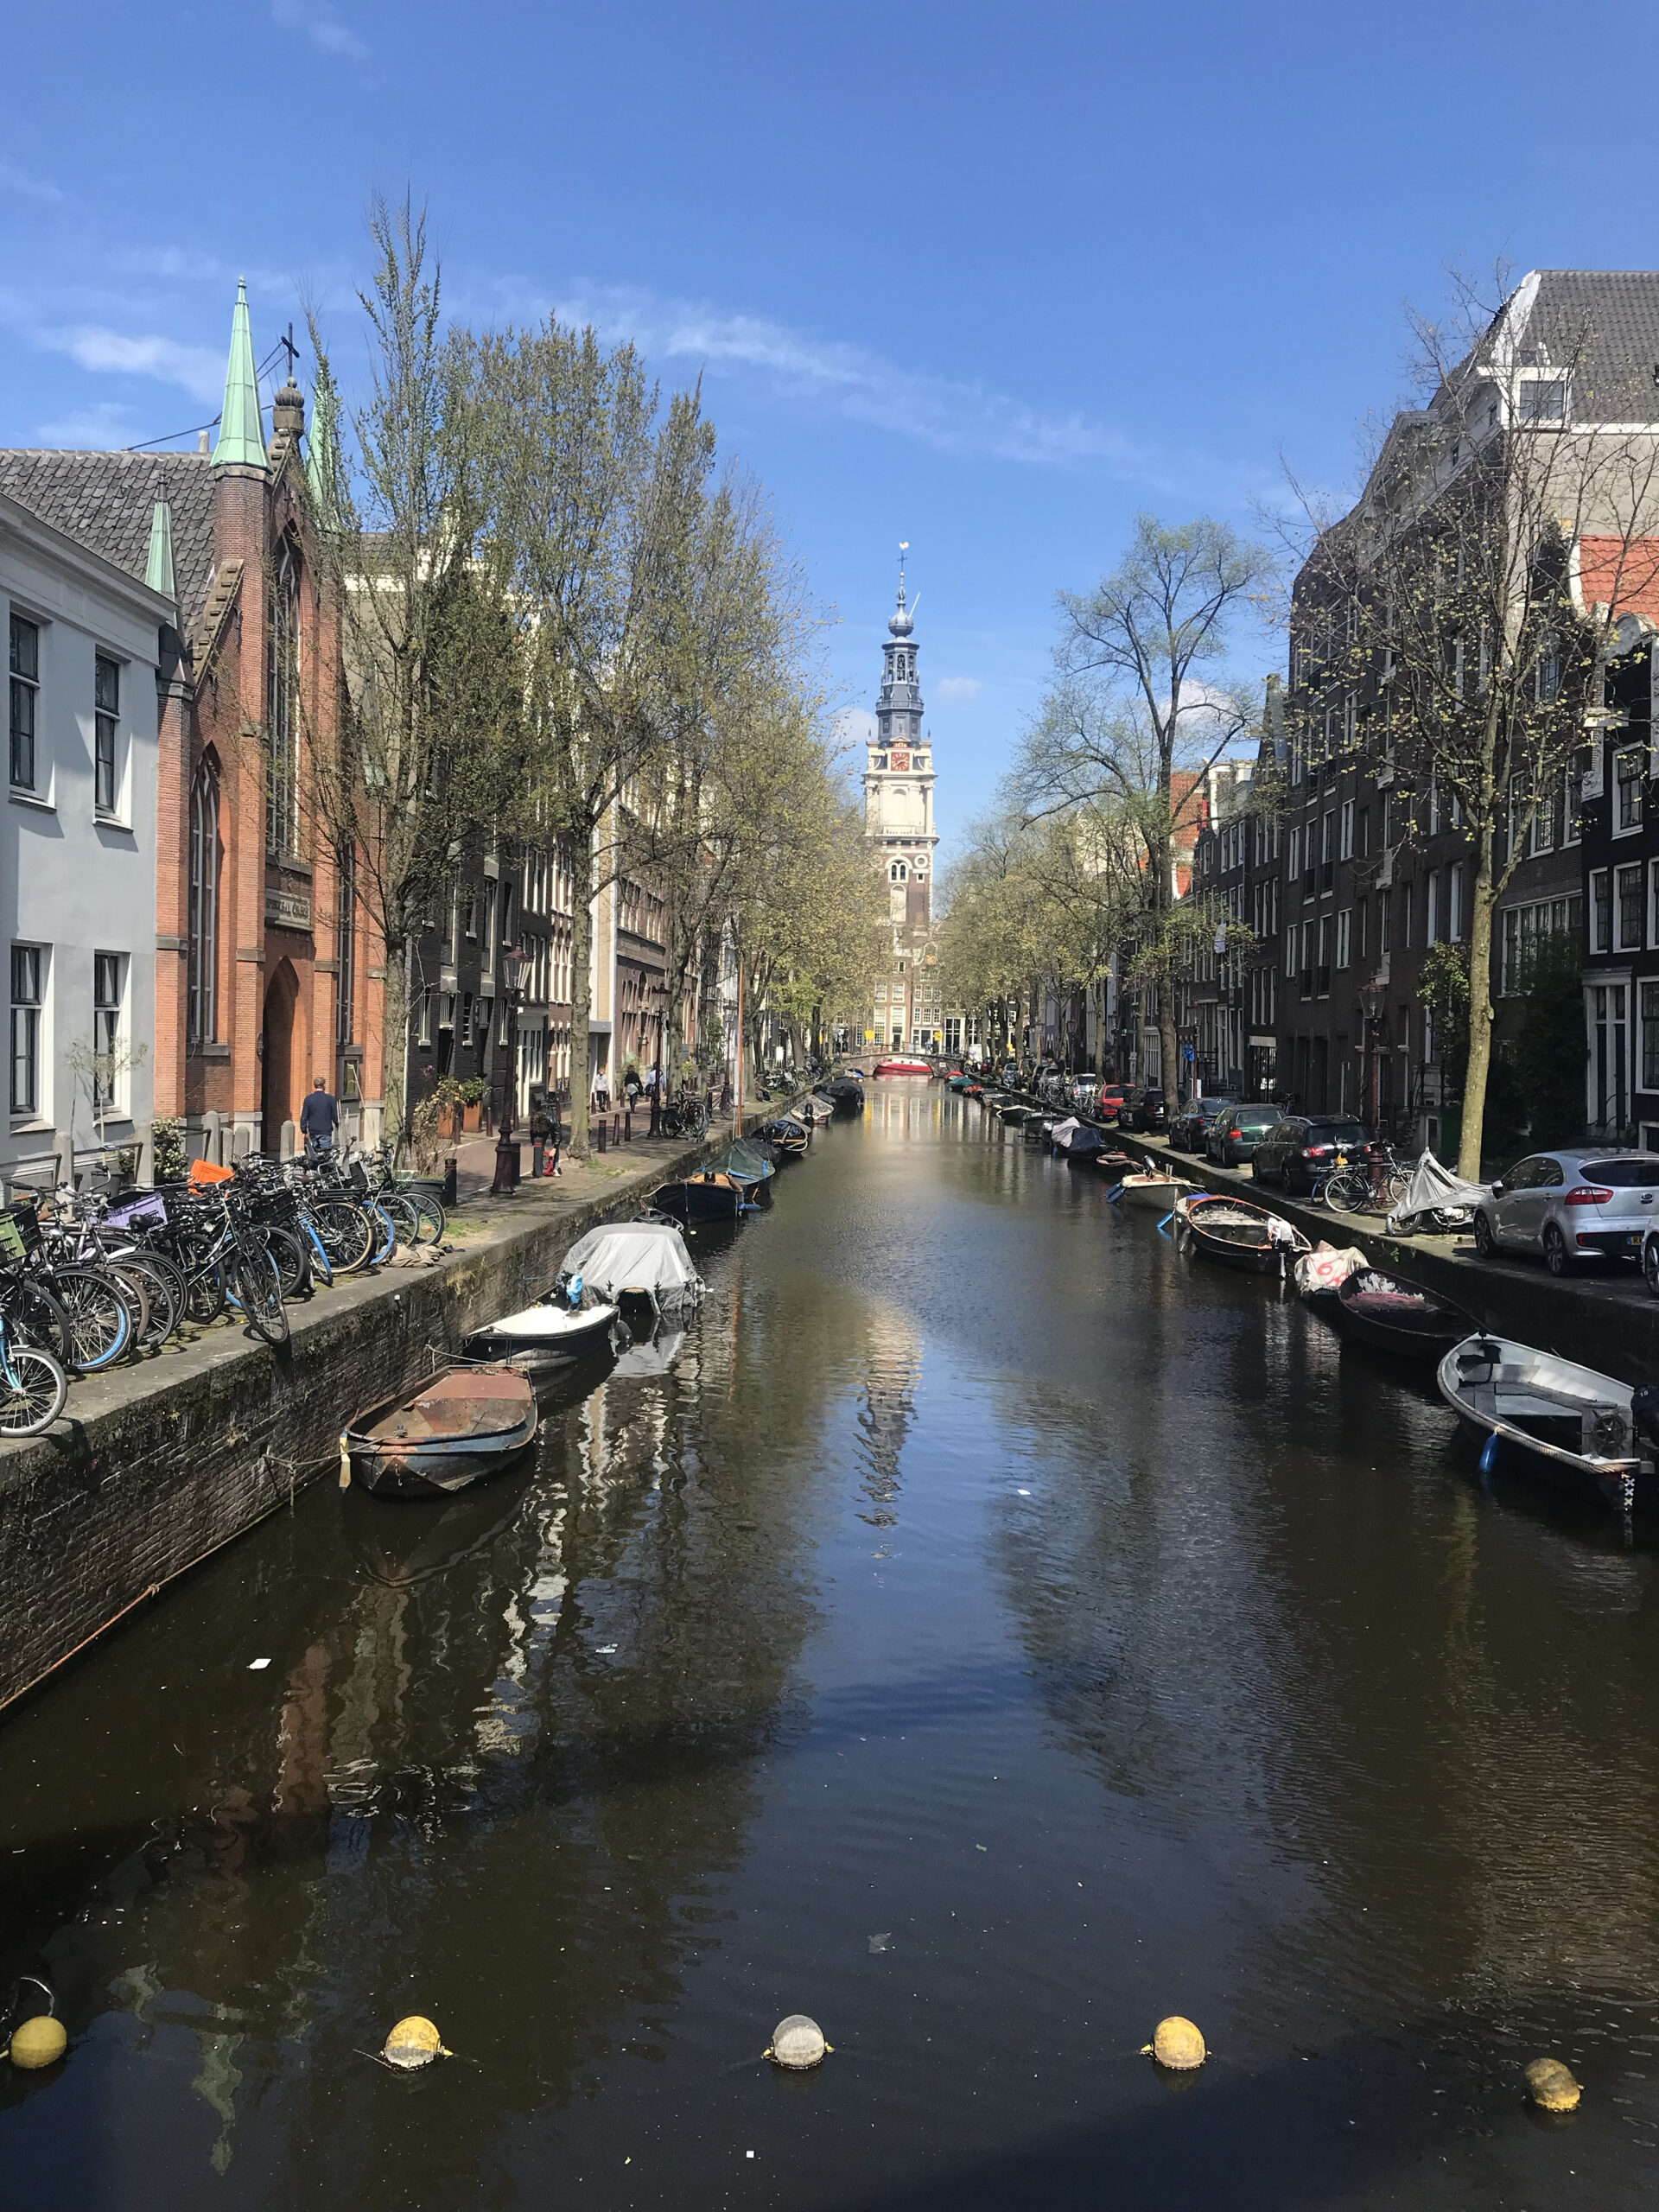 En av mange kanaler i Amsterdam som går mellom hus i byen